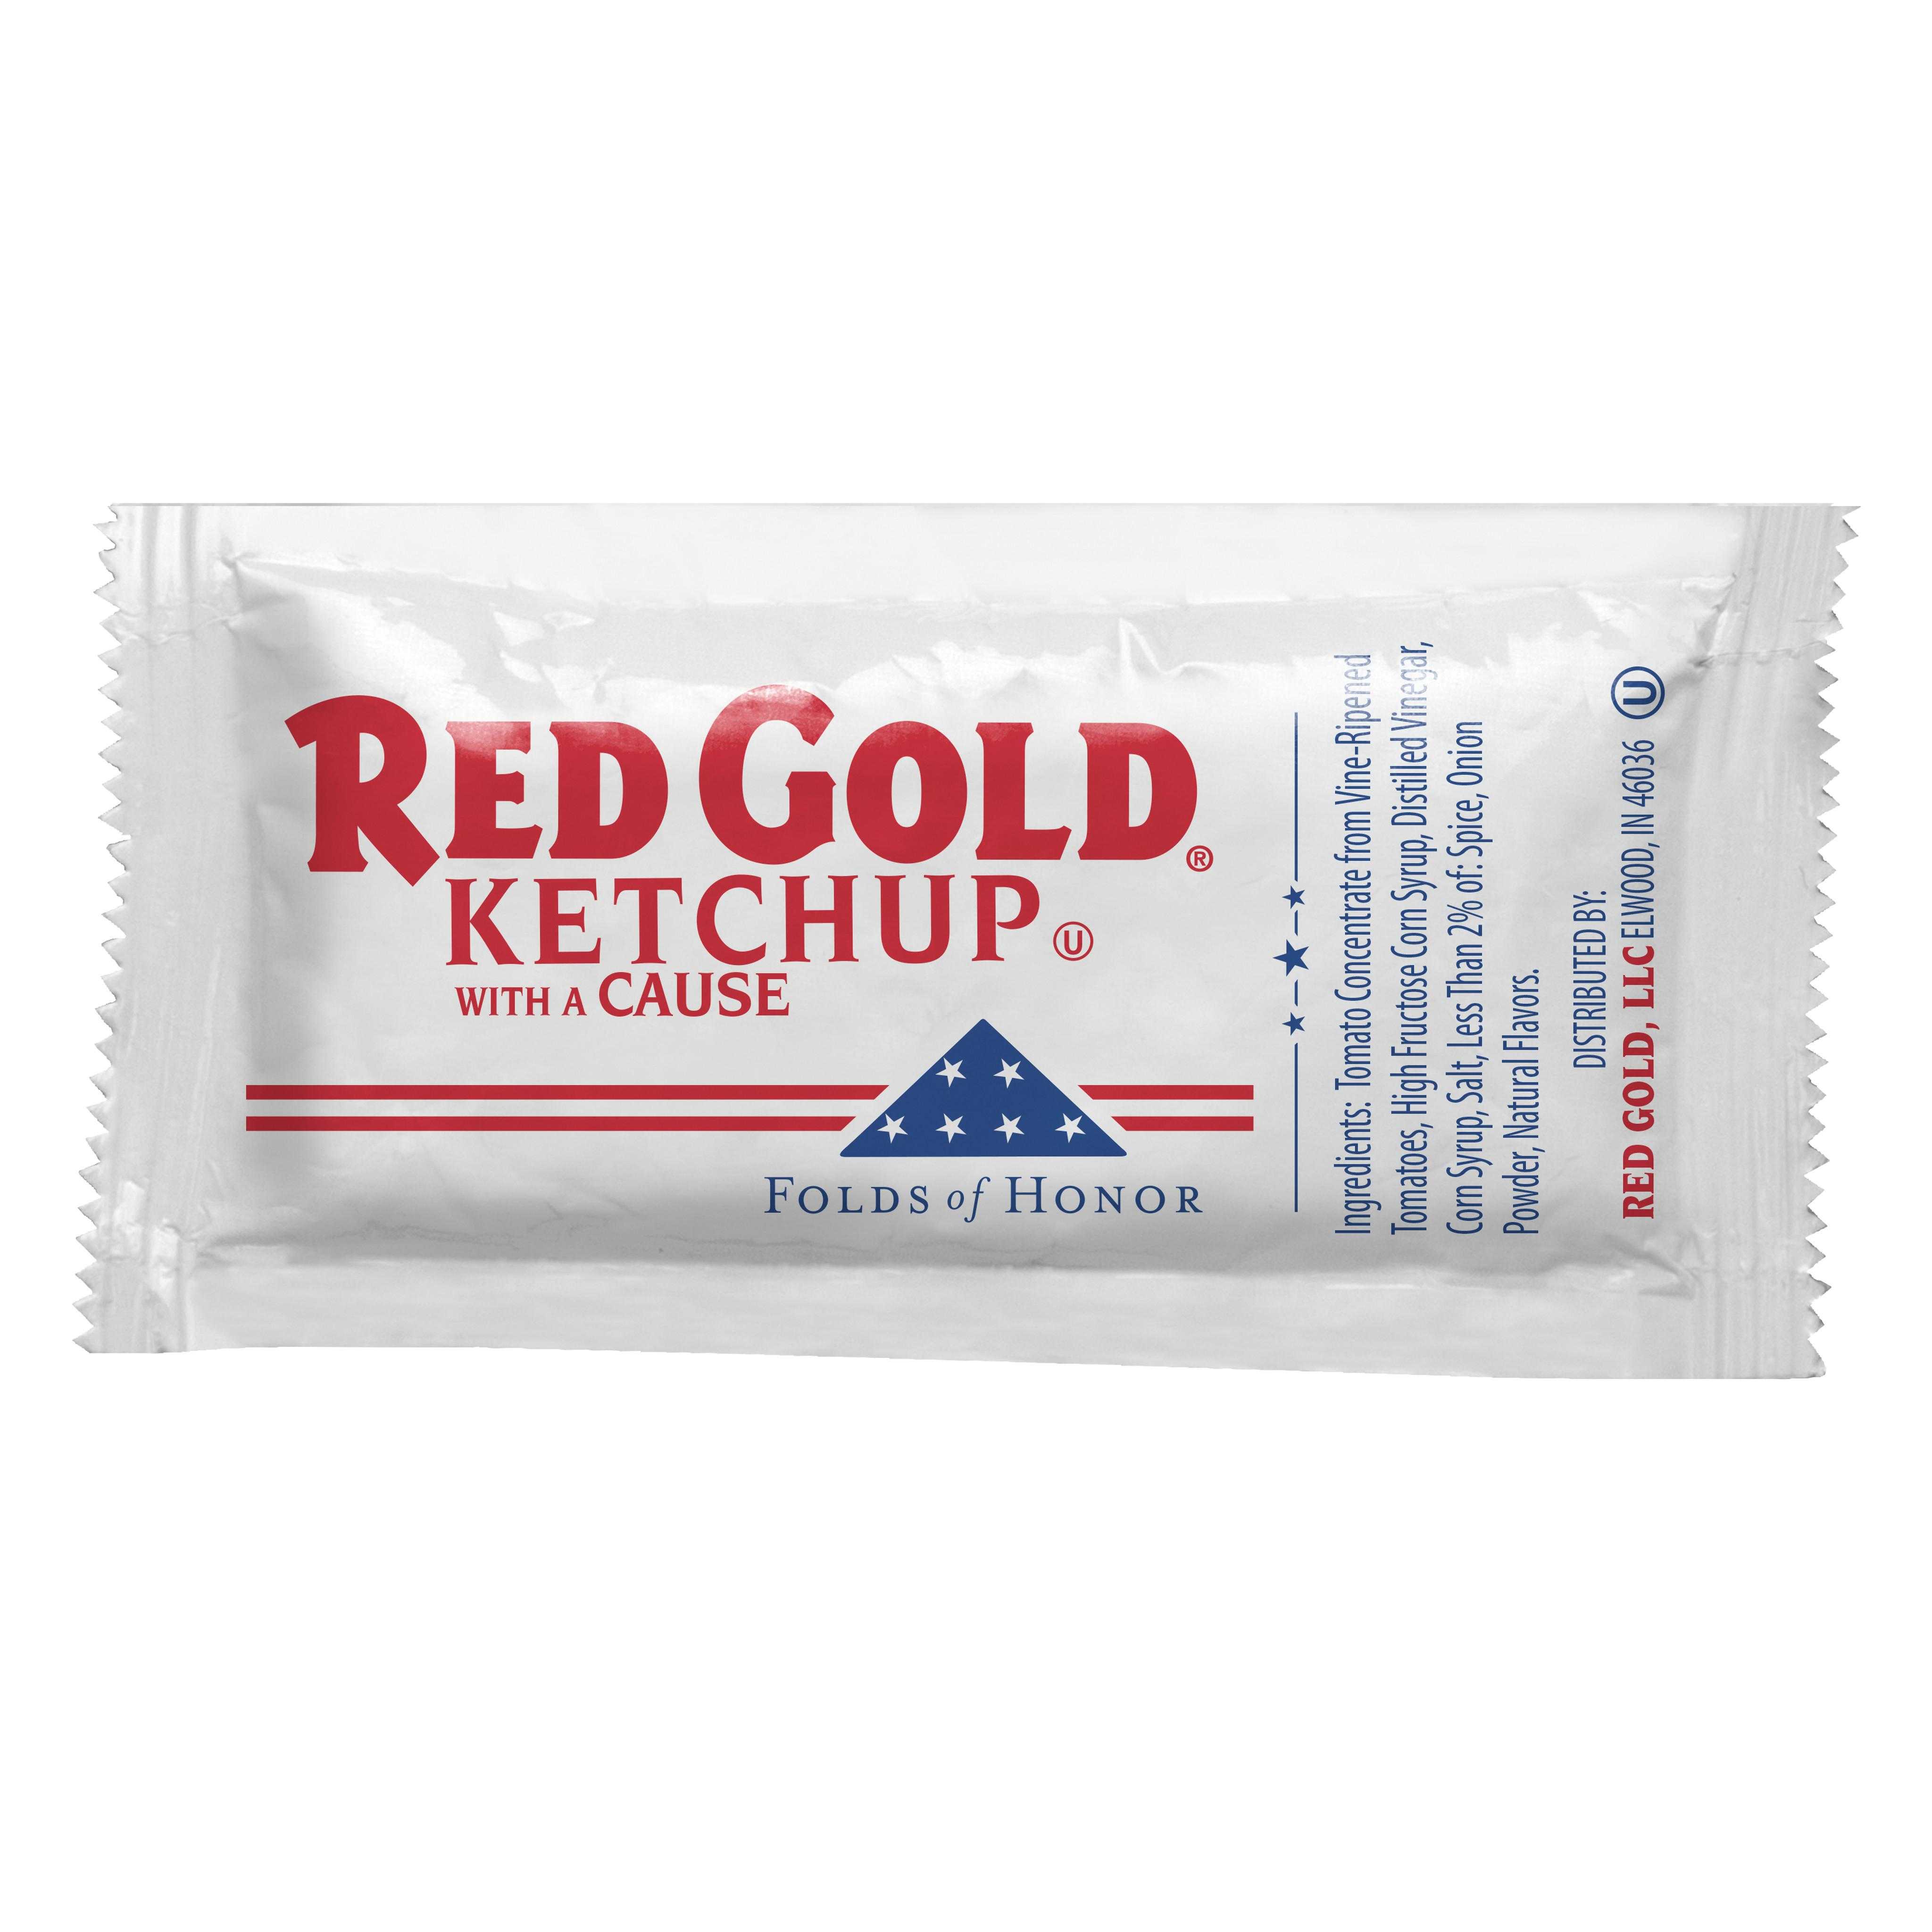 RED GOLD KETCHUP - 114 OZ.